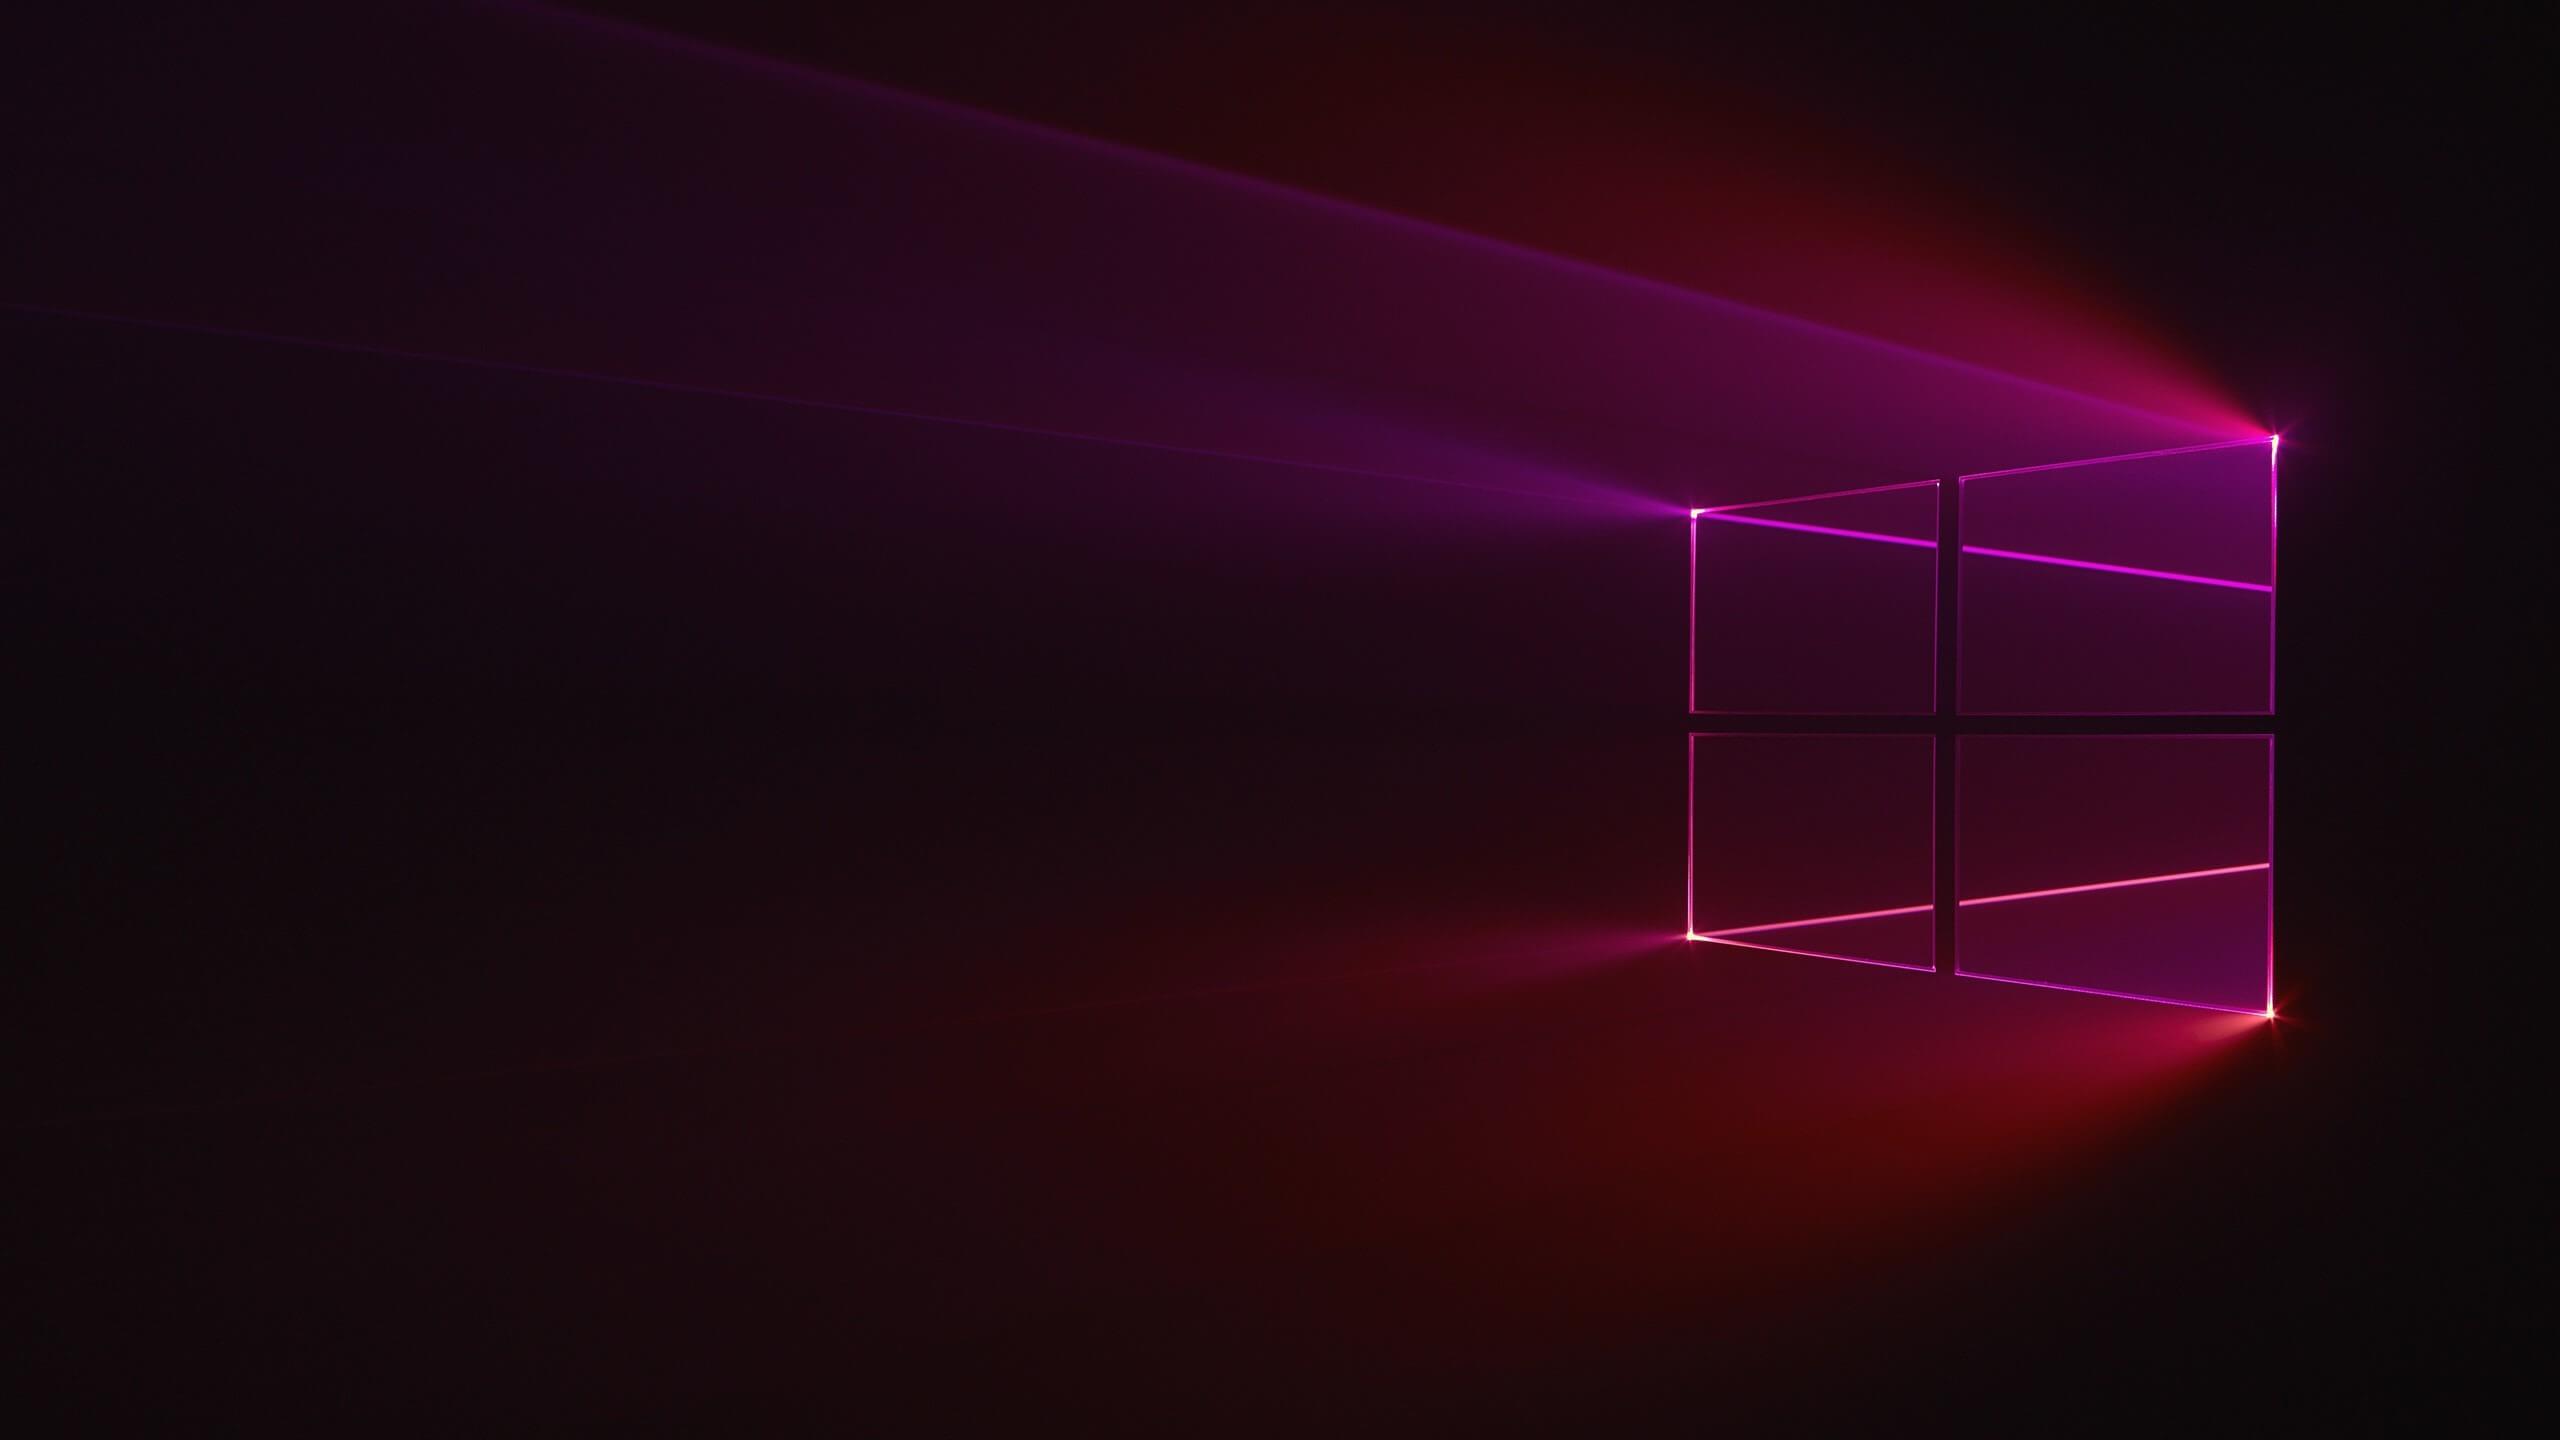 Muốn tìm kiếm hình nền Windows 10 hồng đẹp nhất? Hãy tham khảo những gợi ý của chúng tôi và tận hưởng không gian làm việc đẹp mắt và sinh động hơn. Với nhiều tùy chọn phù hợp cho nhiều phong cách khác nhau, bạn chắc chắn sẽ tìm được lựa chọn ưng ý.